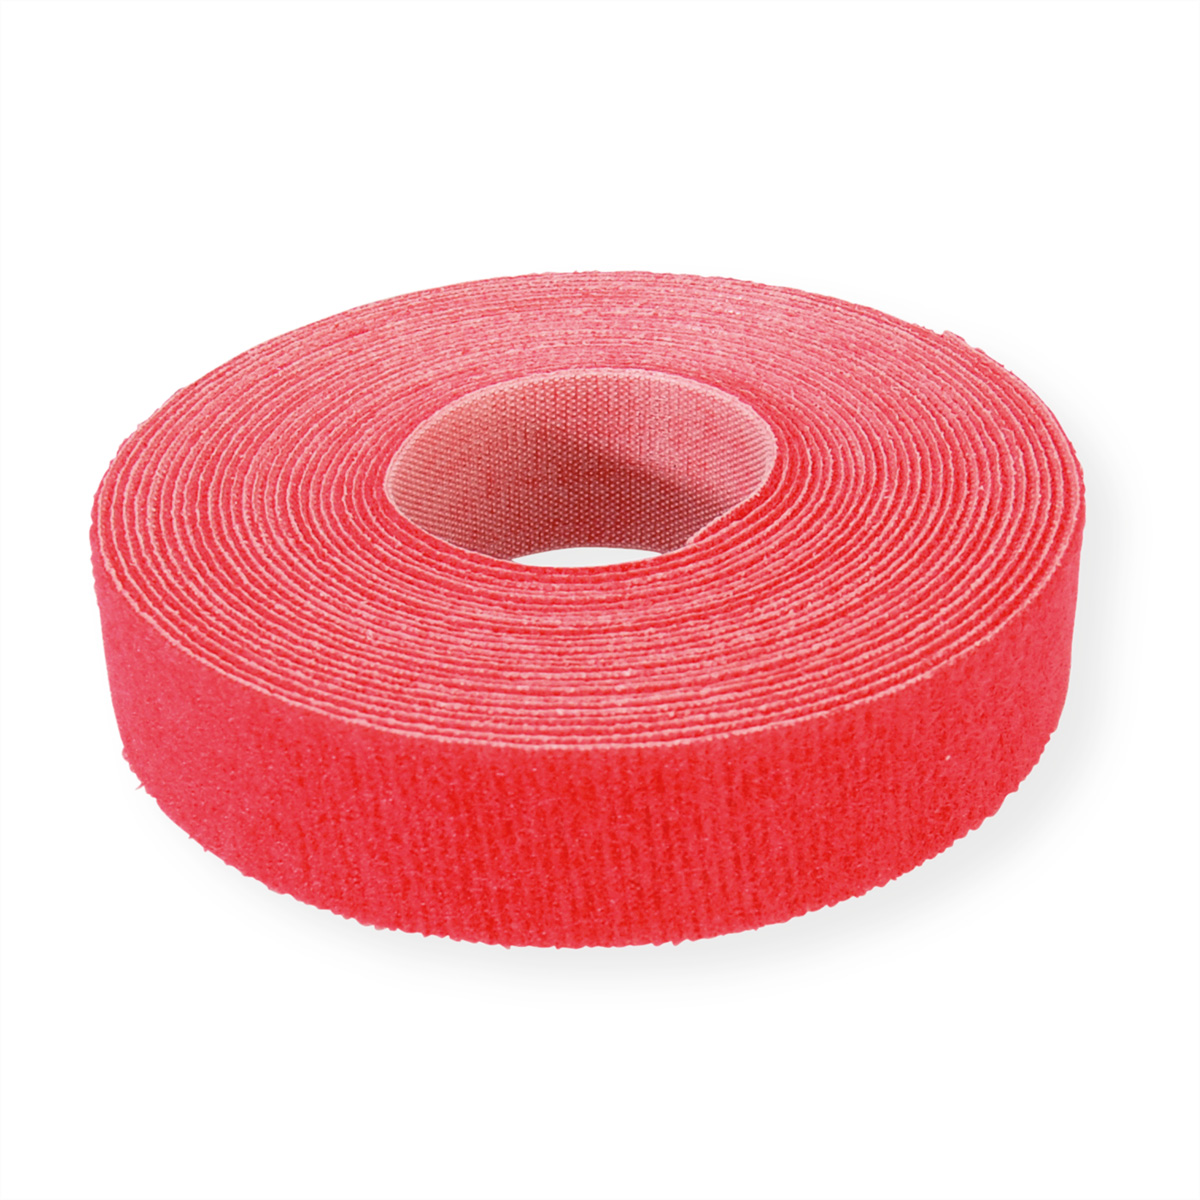 VELCRO® ONE-WRAP® Klettbandstreifen 20mm, unperforiert auf Rolle, rot, 25 m